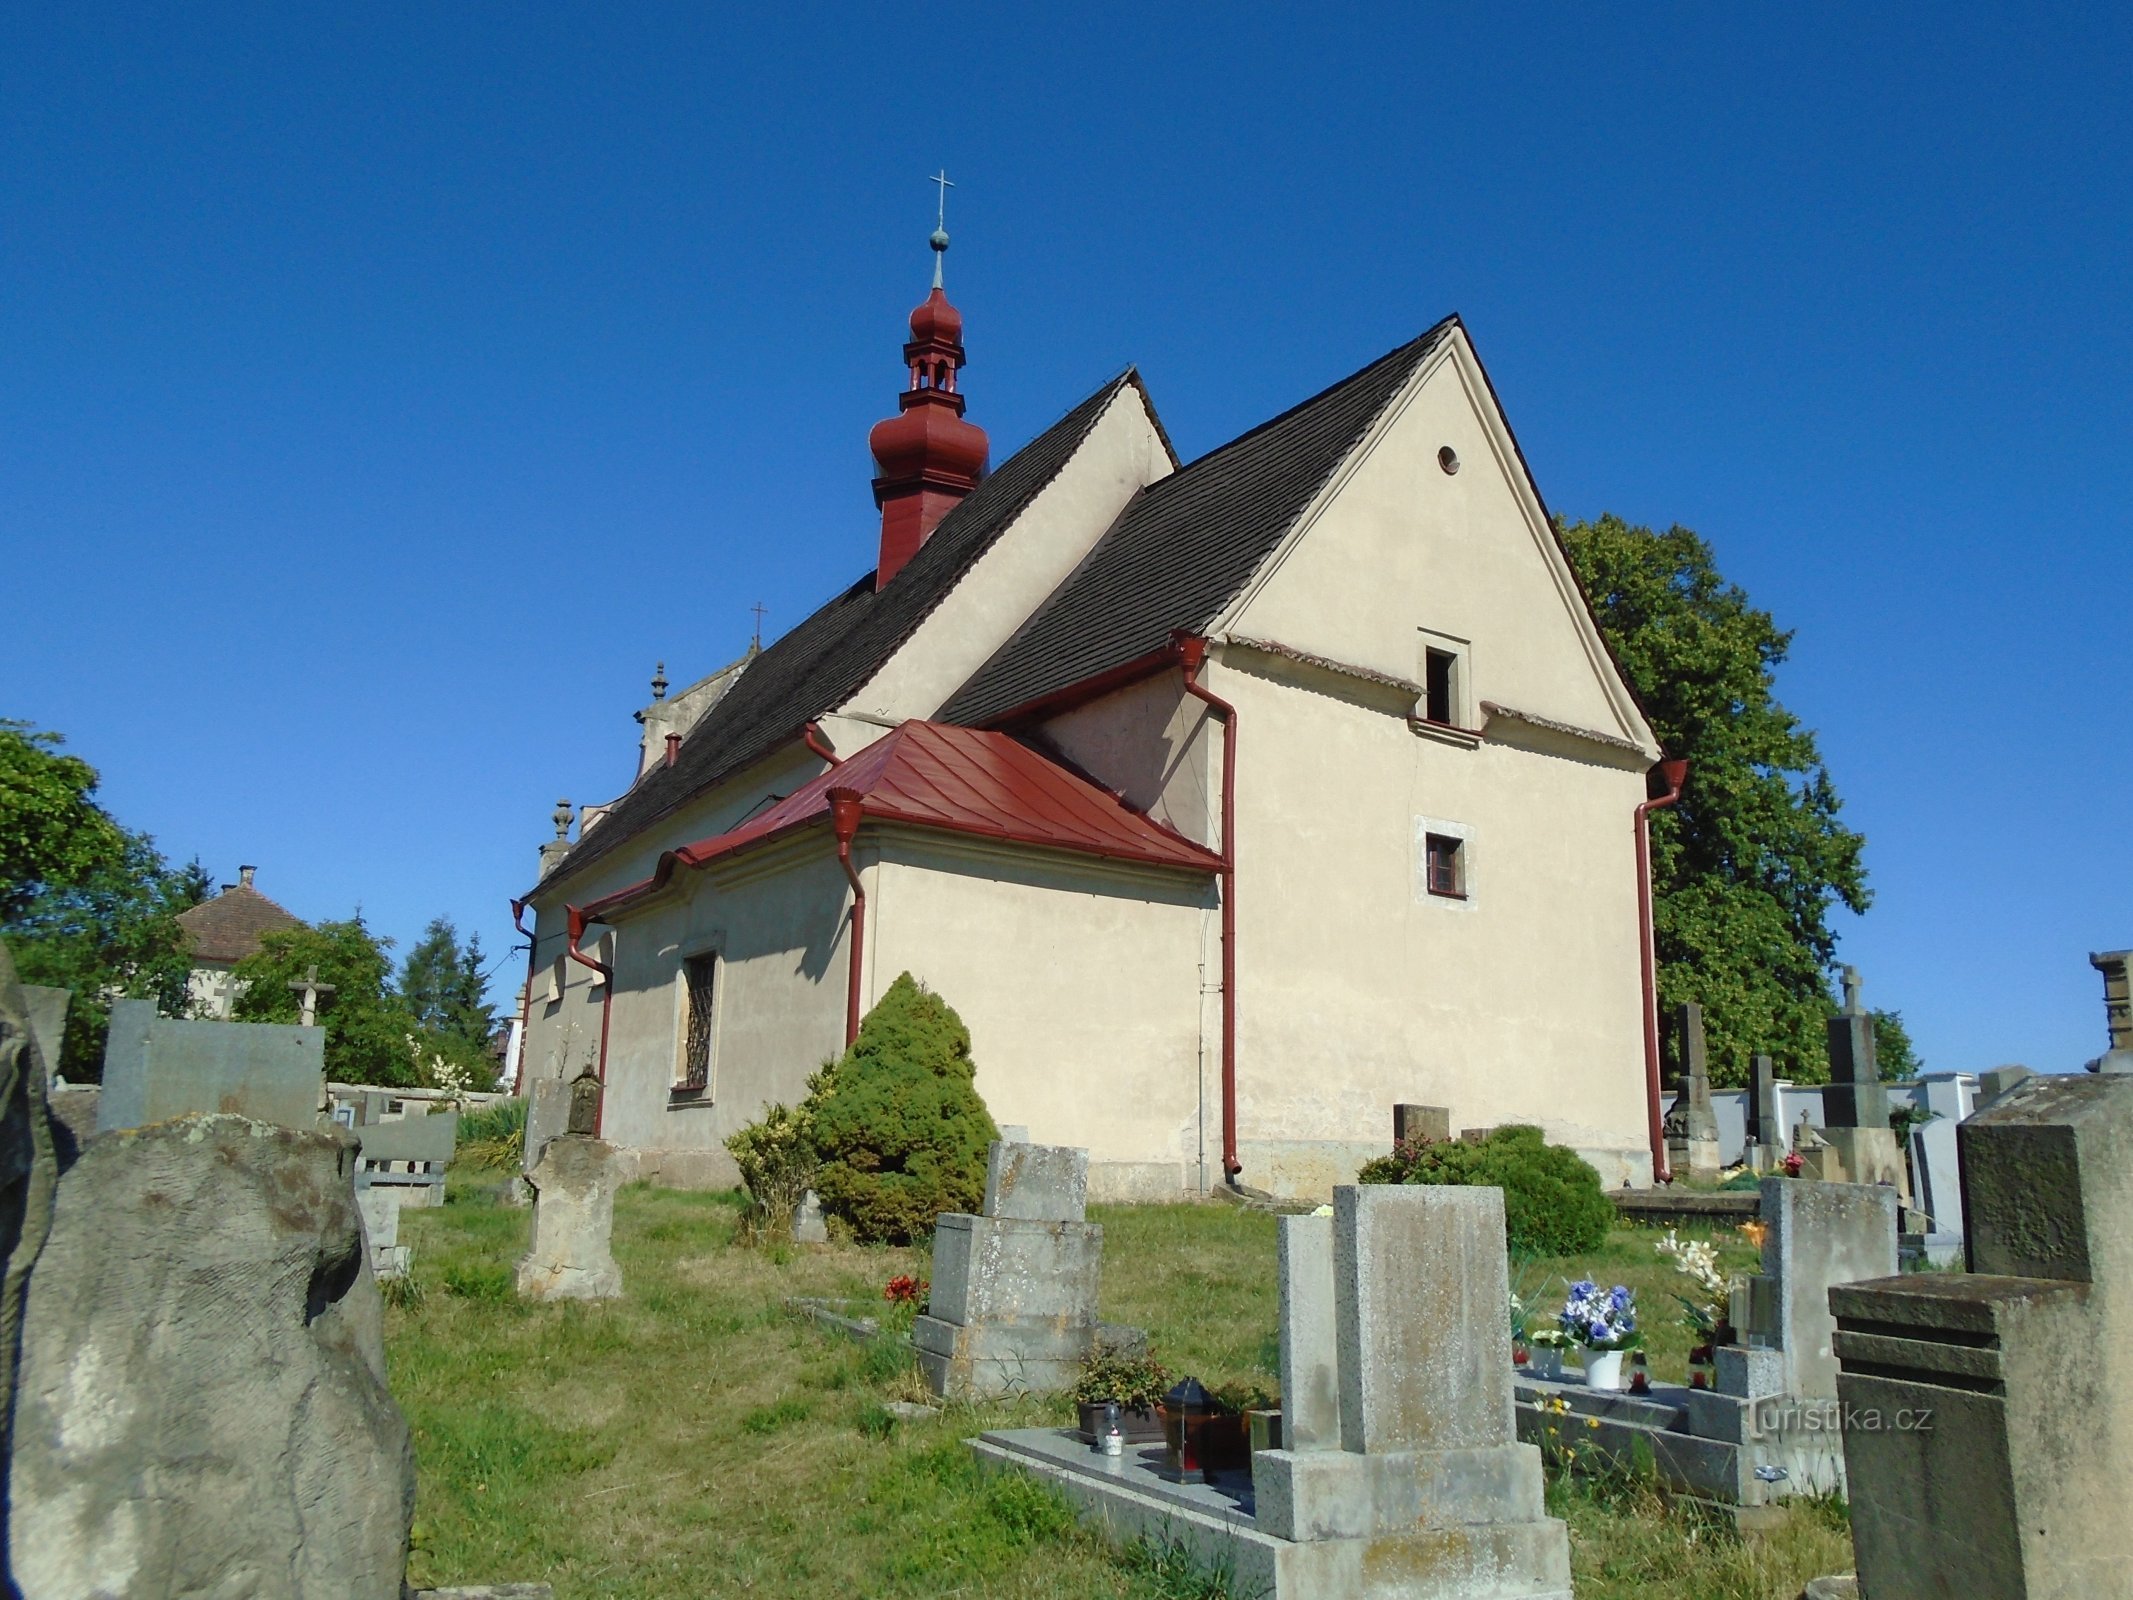 Kirche Mariä Himmelfahrt (Chotěborky, 3.7.2018. Juli XNUMX)